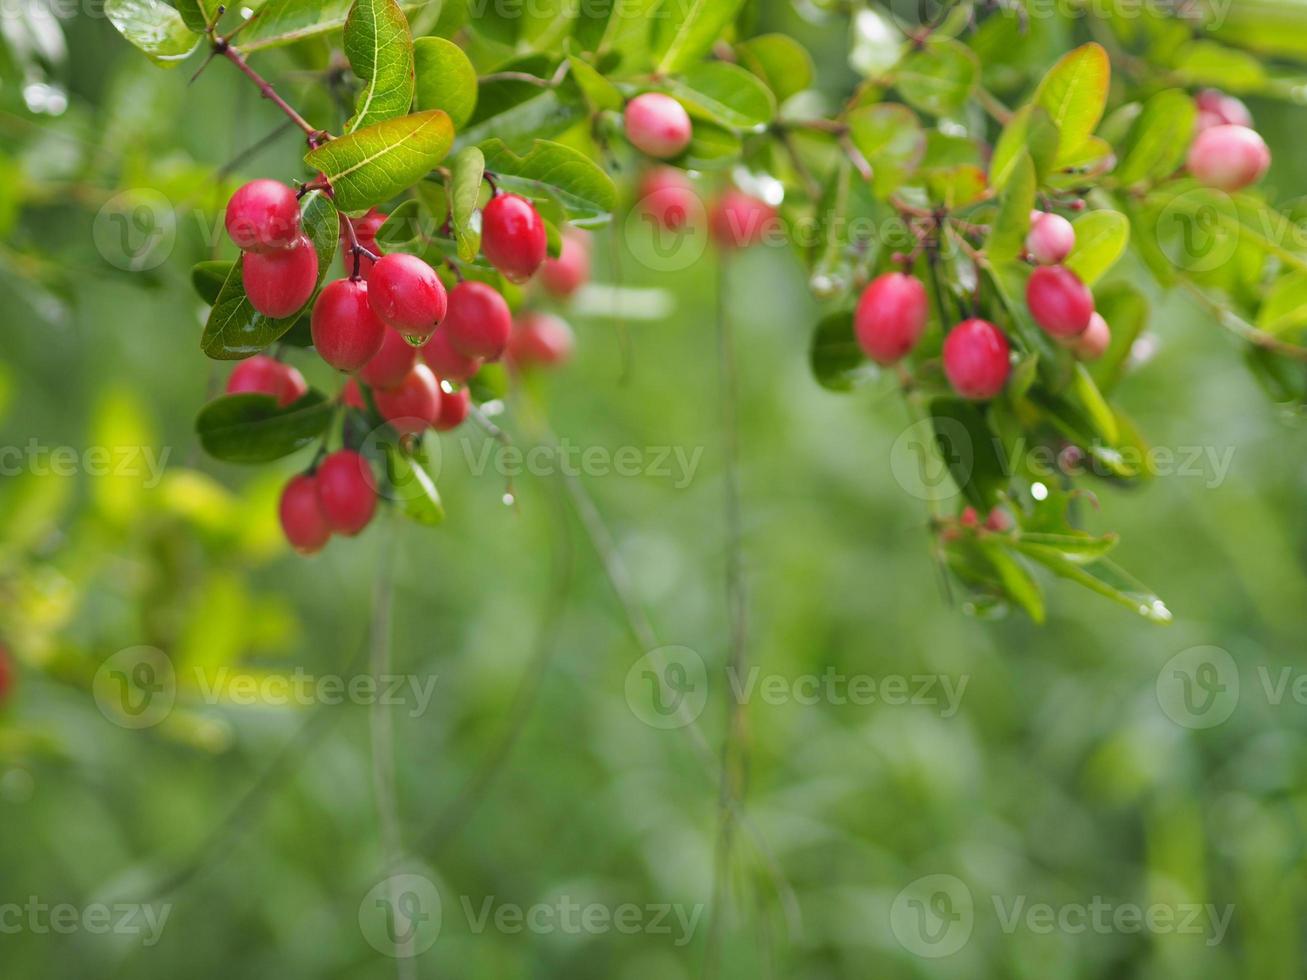 fruta karonda, carissa carandas l. espinho de karanda carunda cristo, árvore apocynaceae florescendo no jardim em turva de fundo da natureza foto